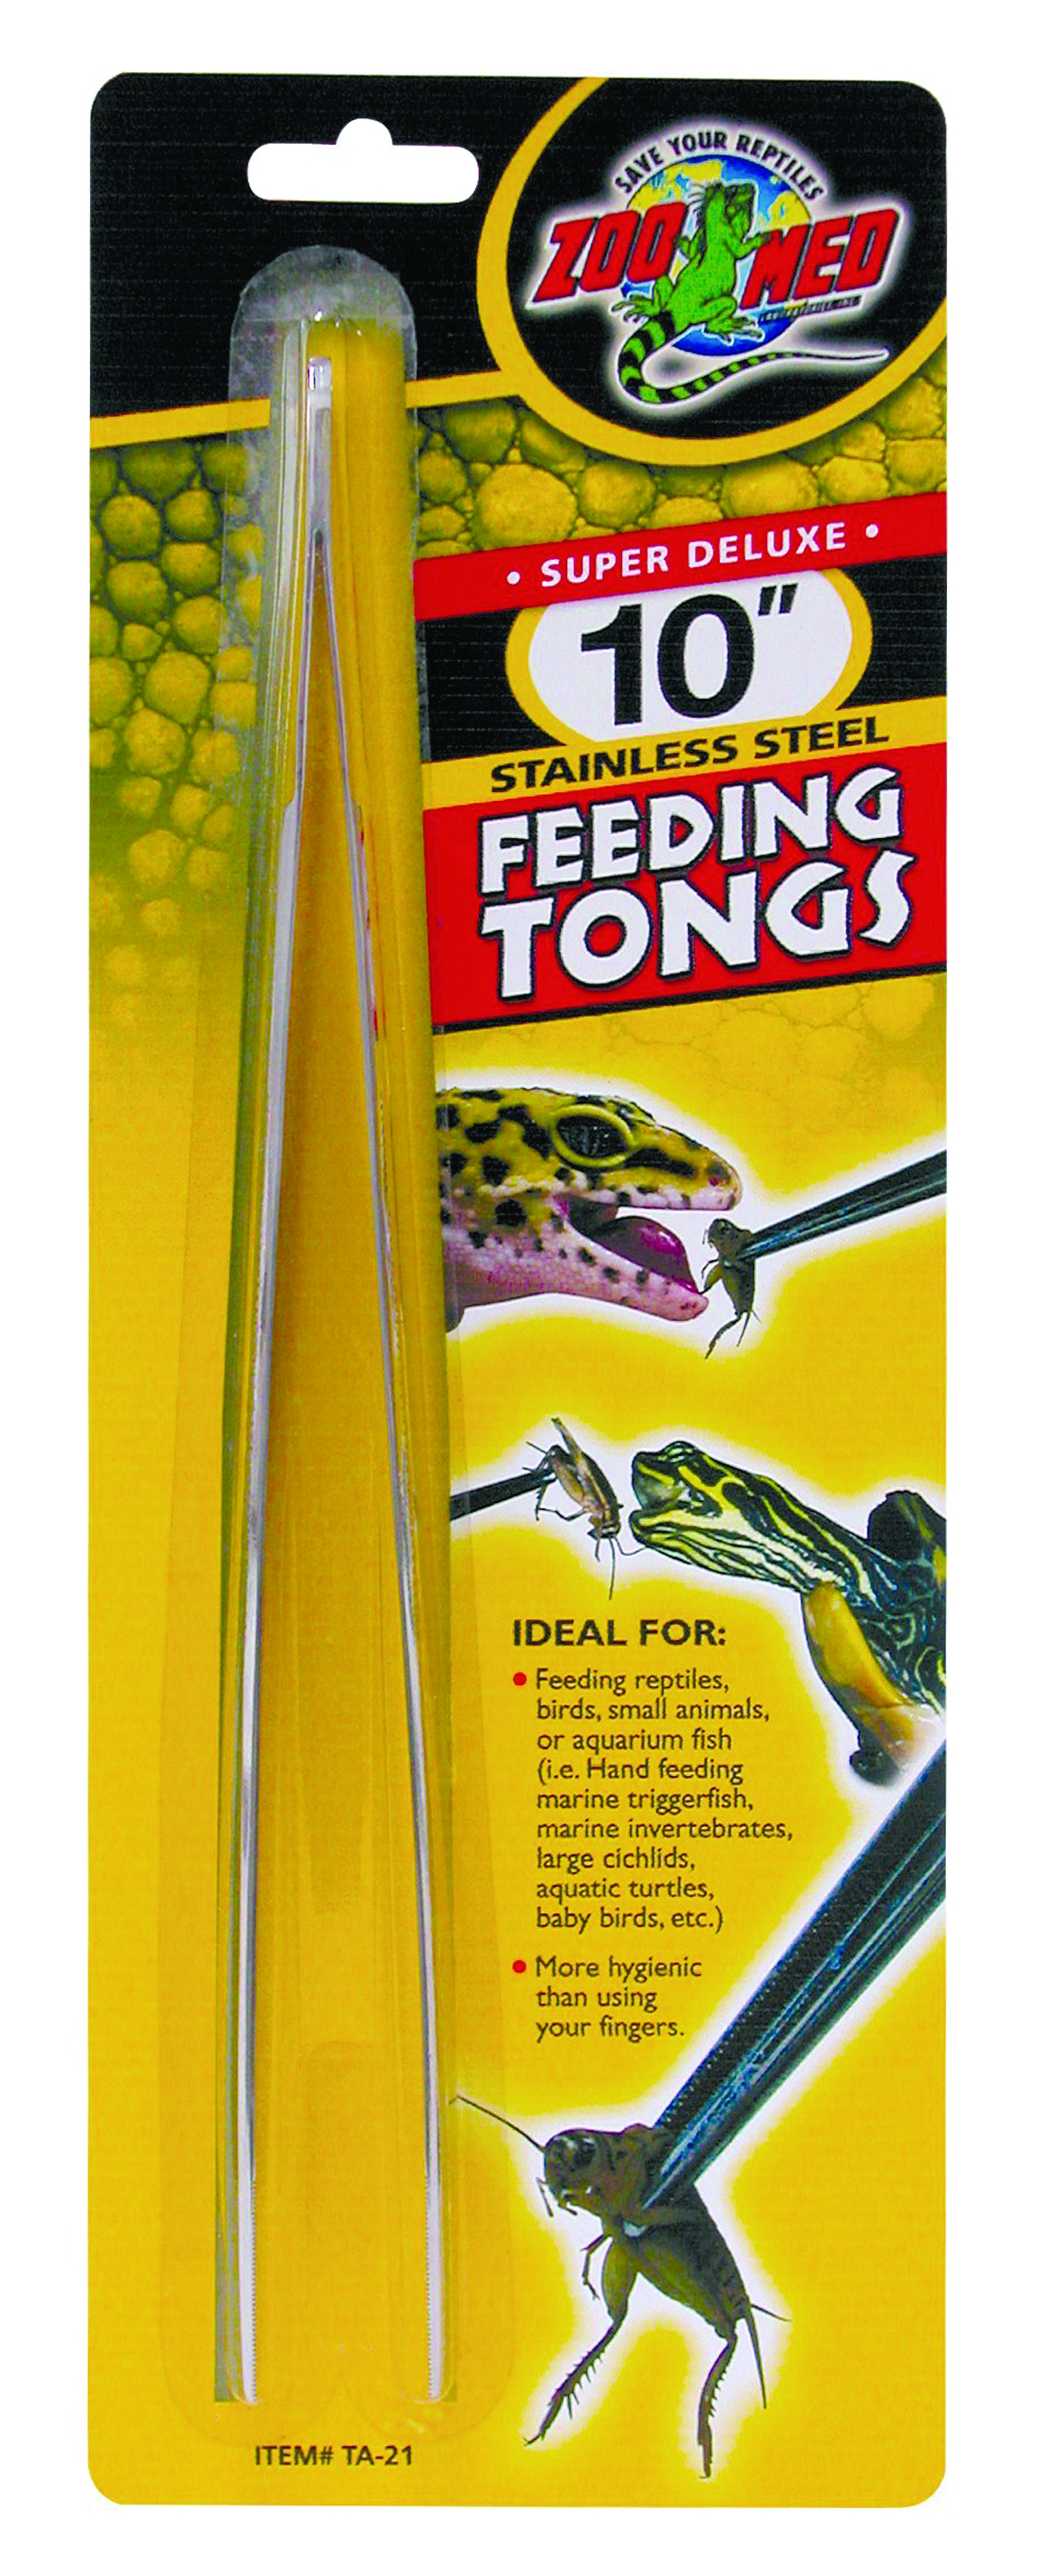 Stainless Steel Feeding Tongs